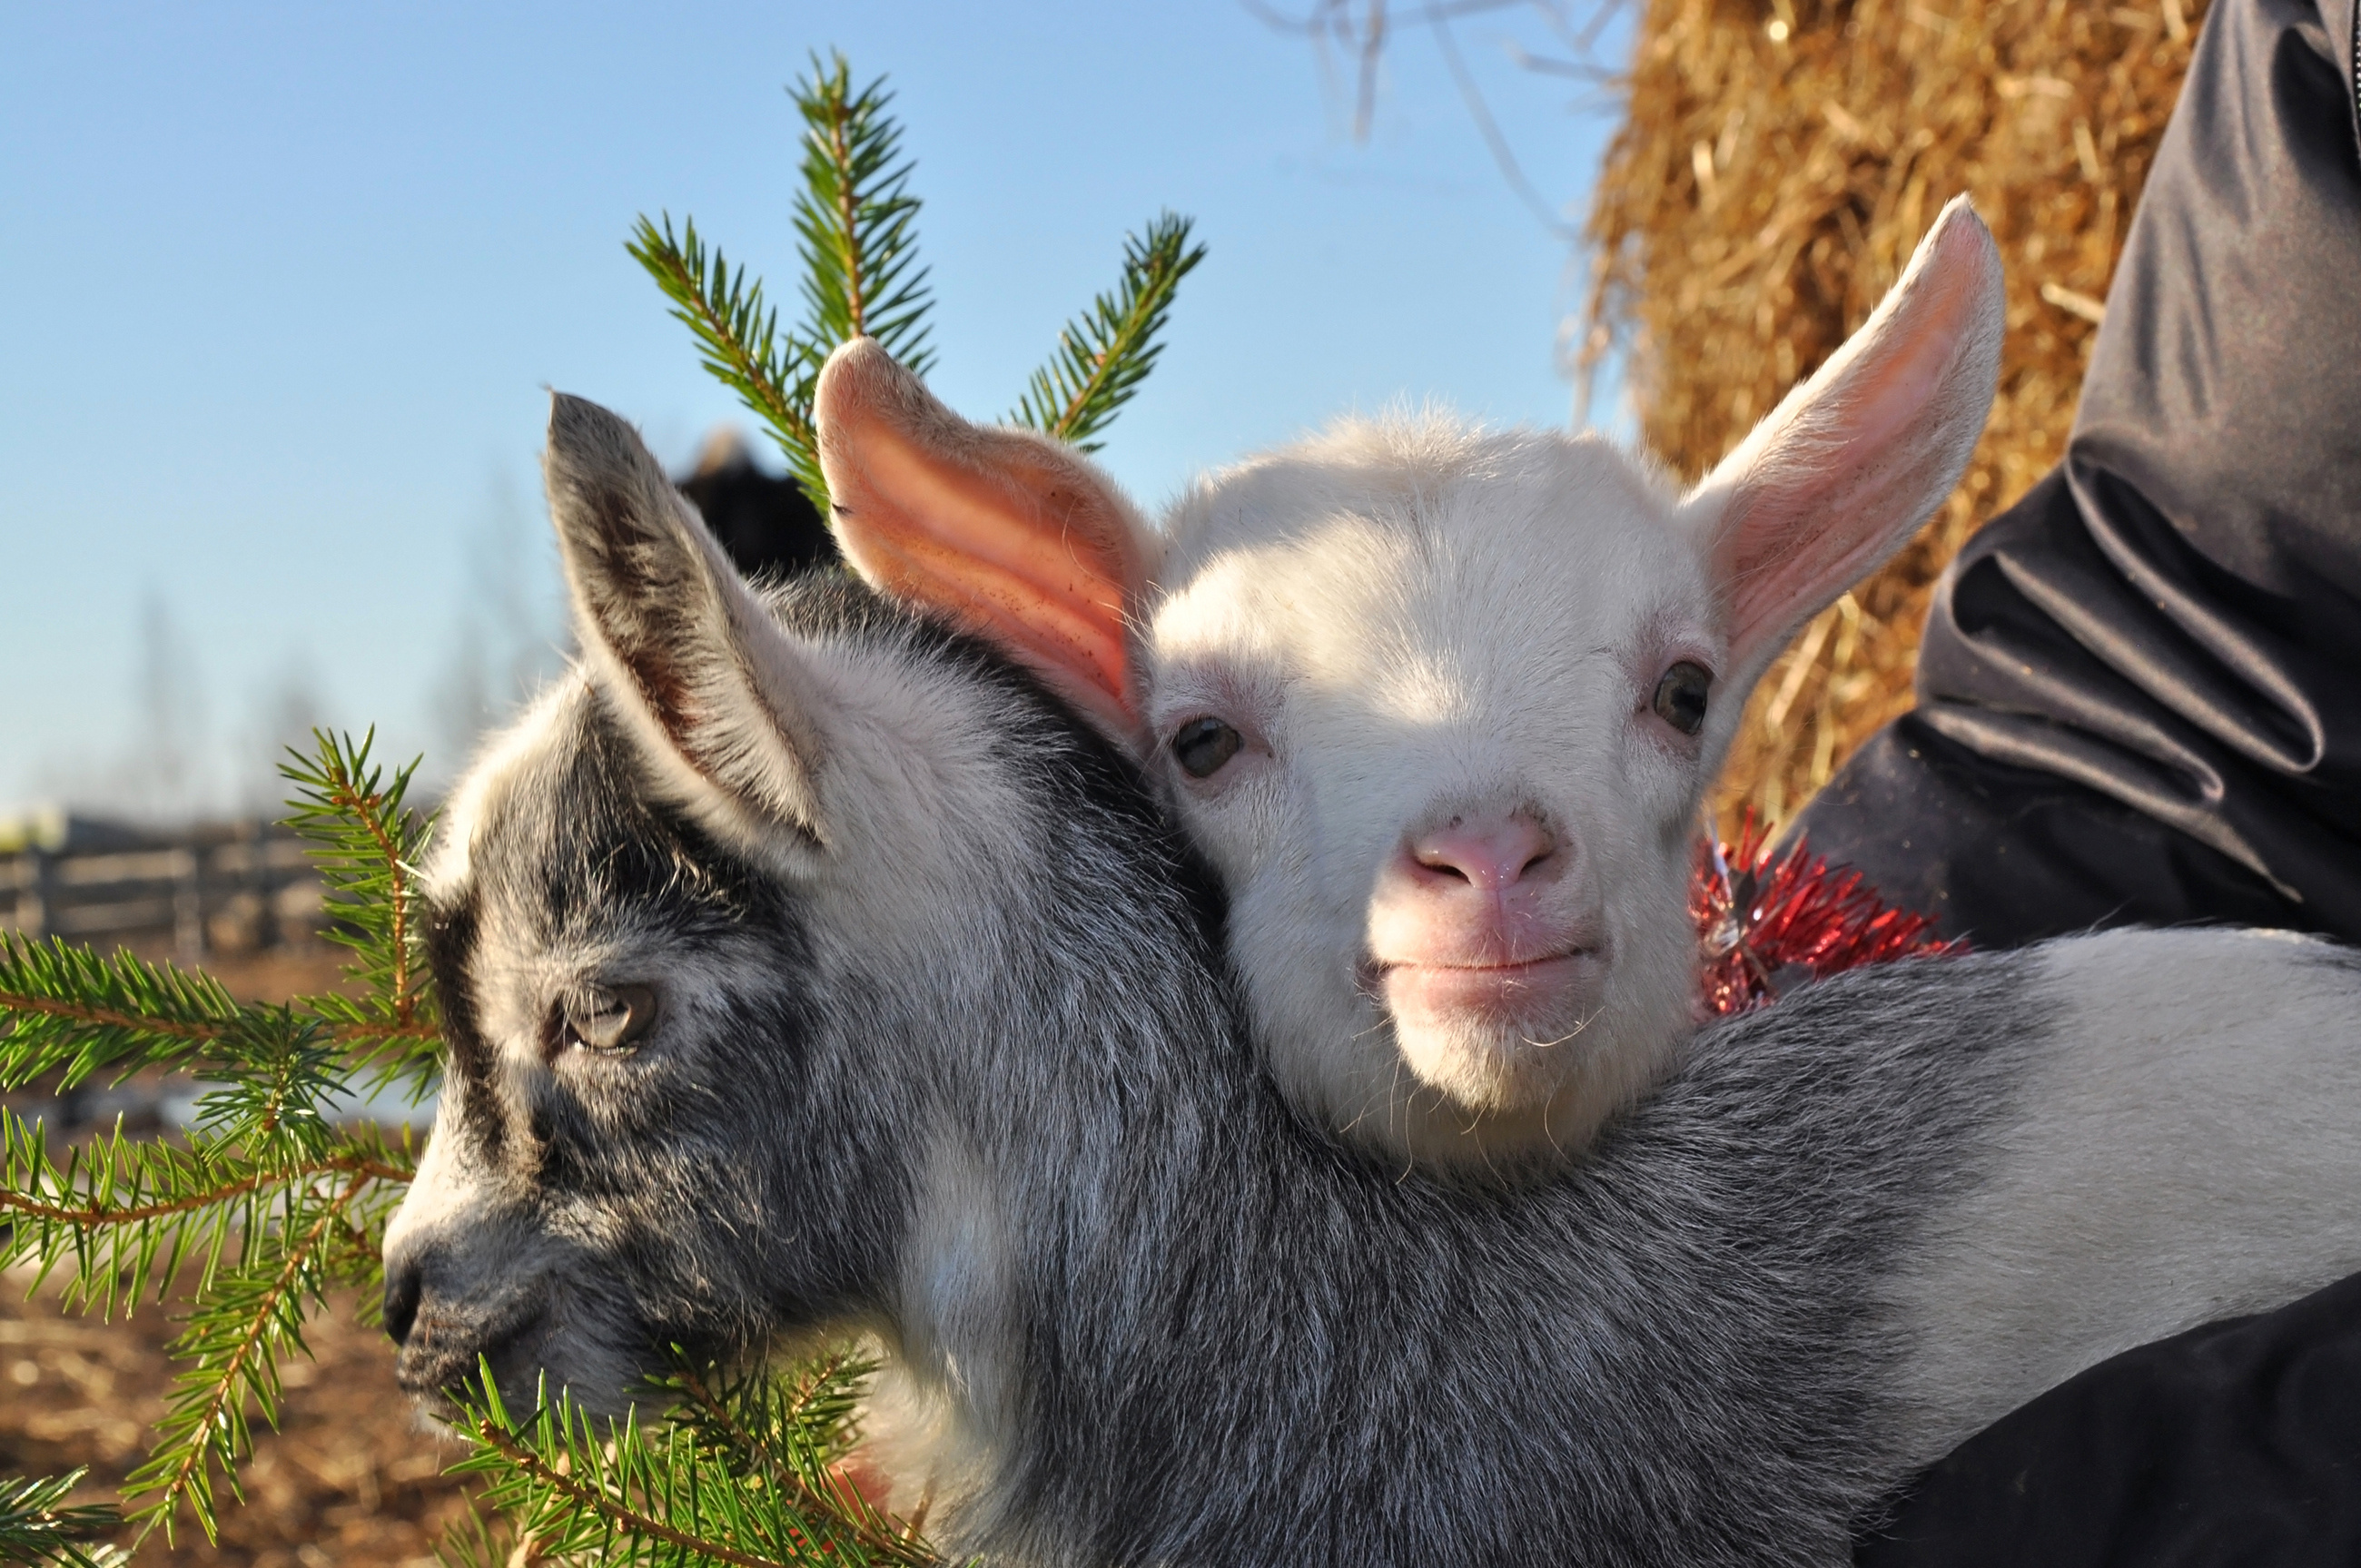 Christmas goats